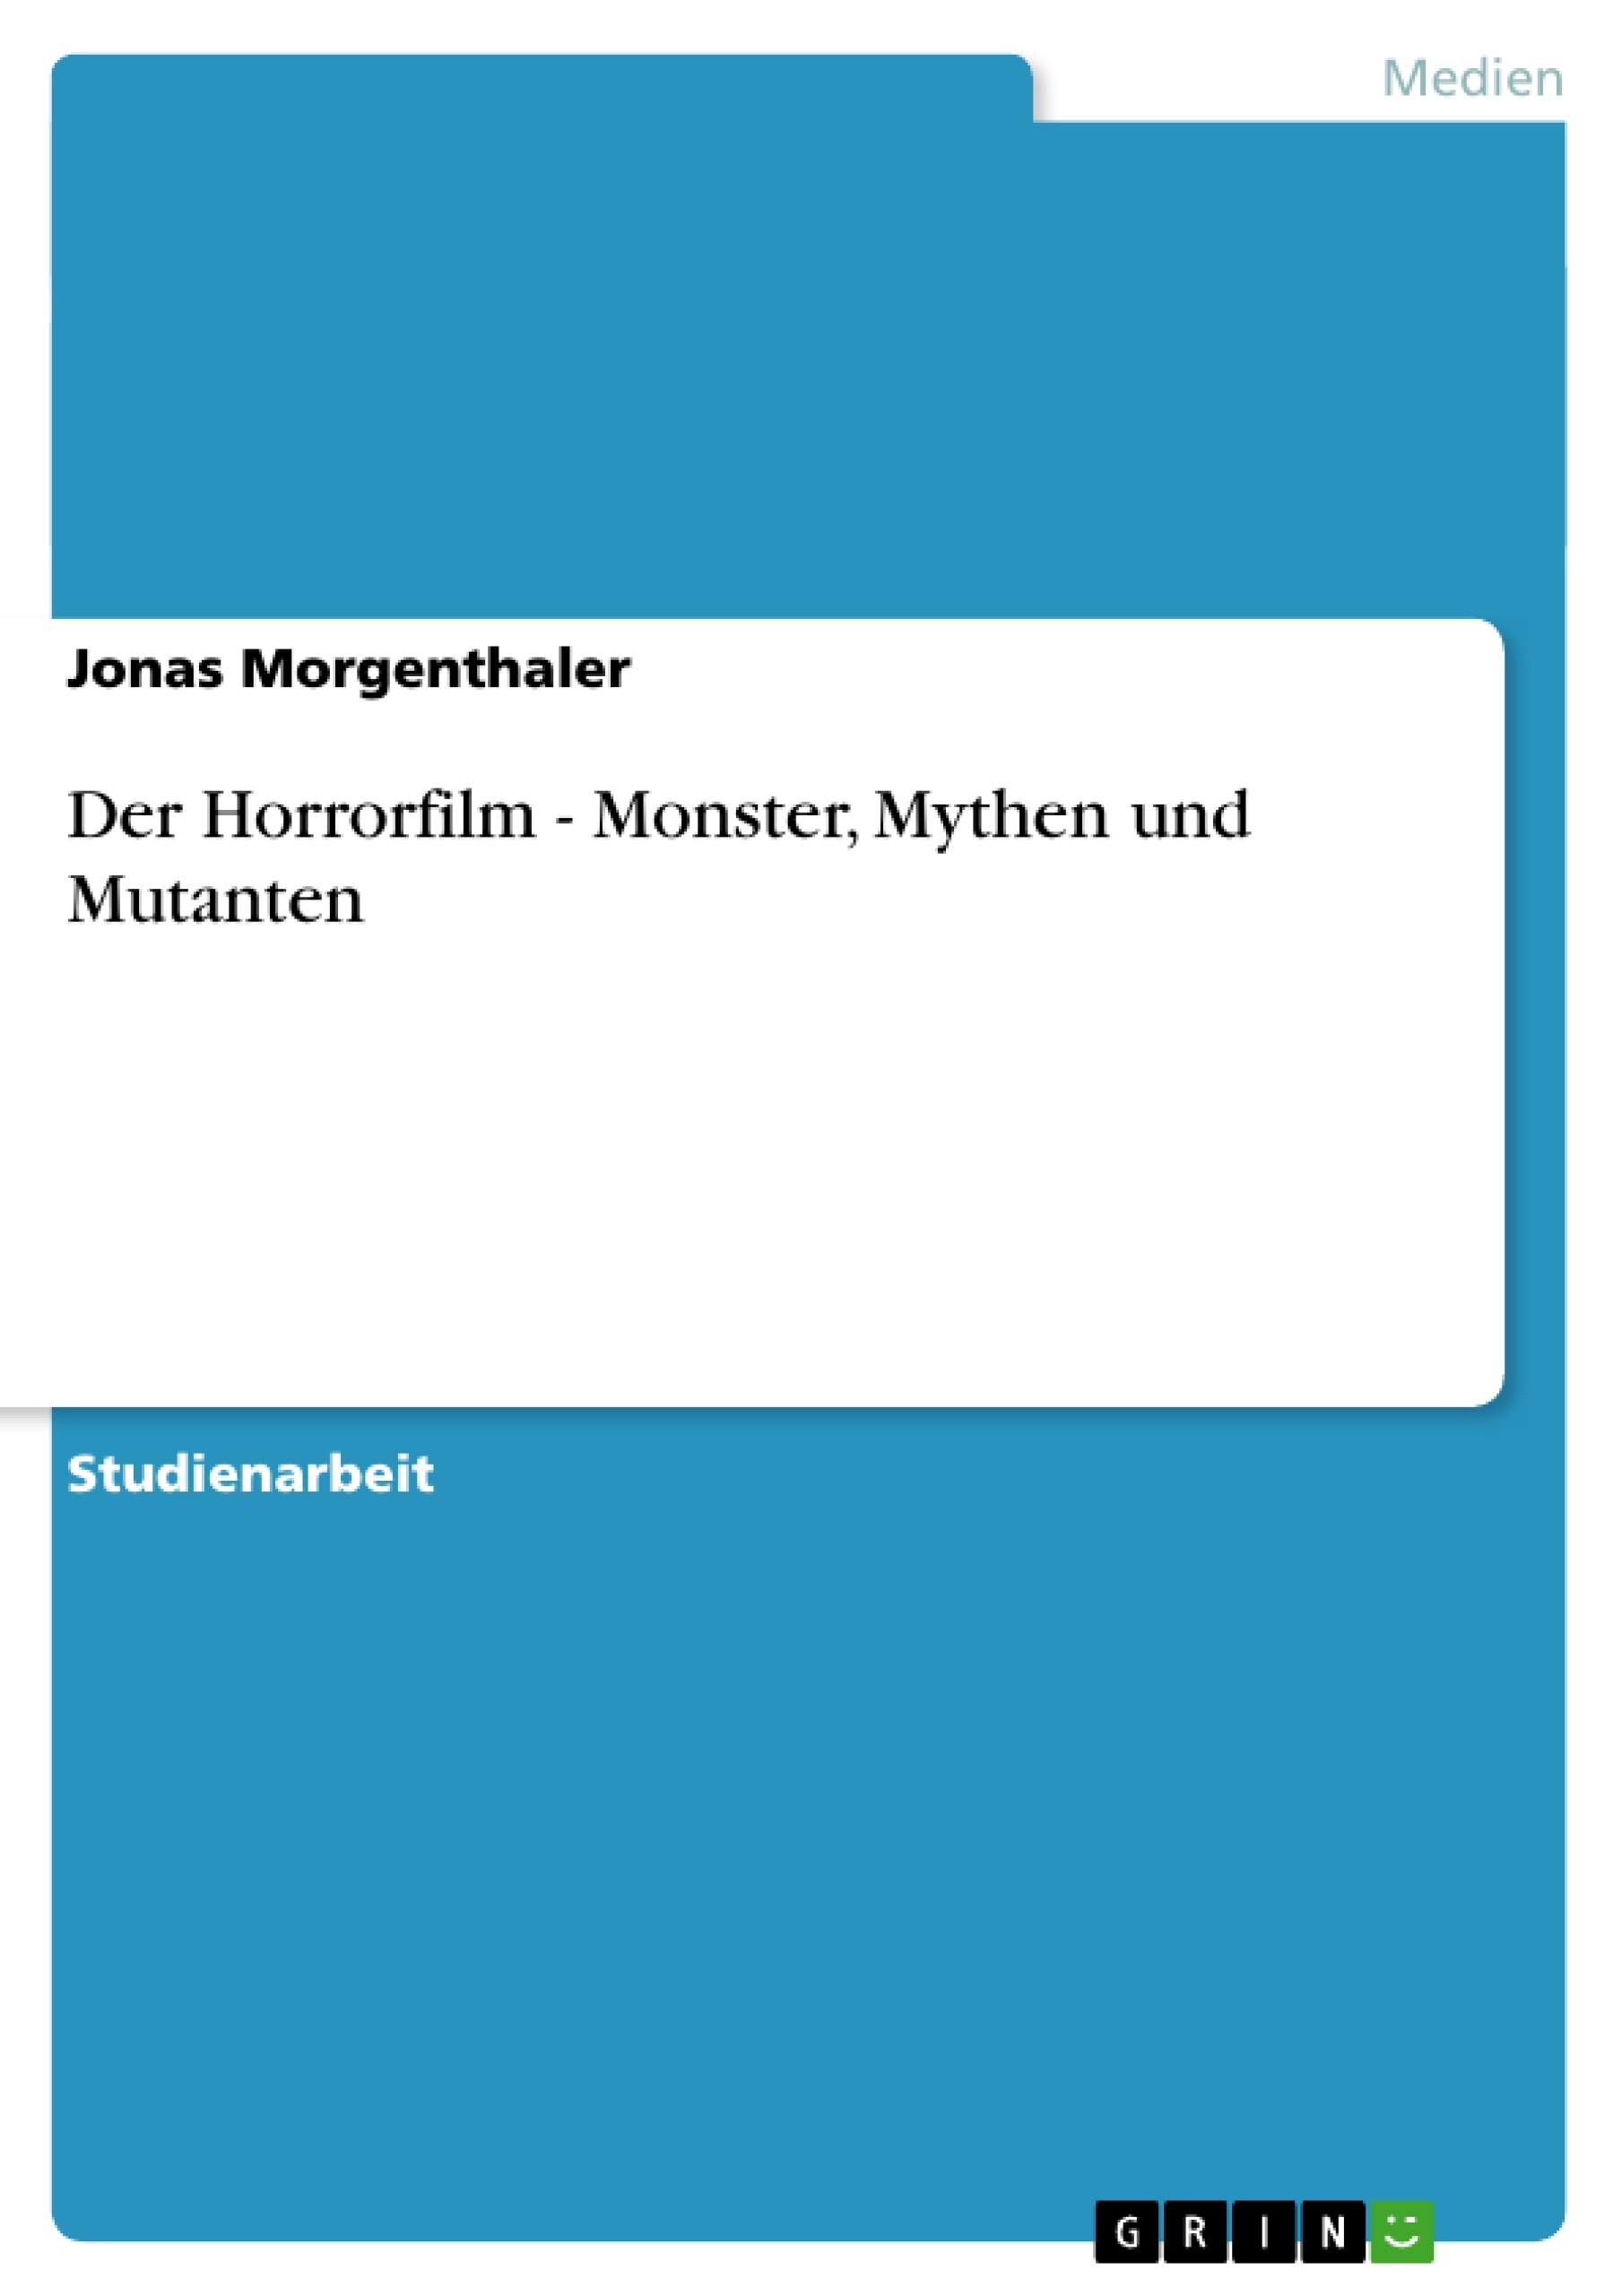 Title: Der Horrorfilm - Monster, Mythen und Mutanten